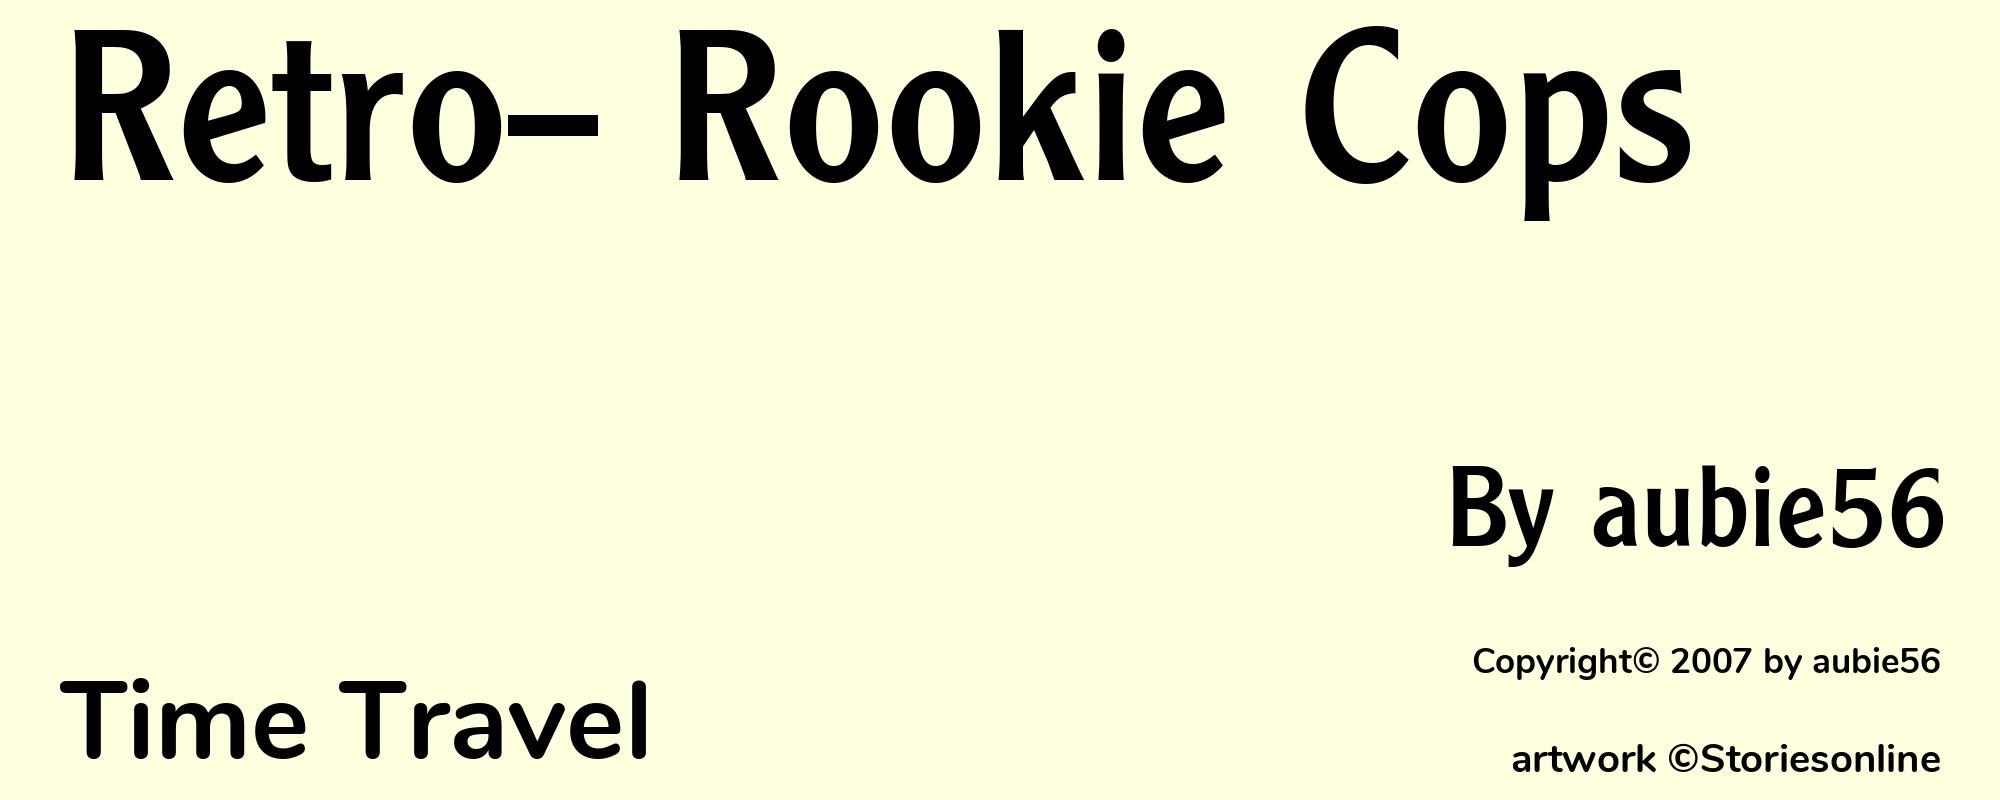 Retro-- Rookie Cops - Cover